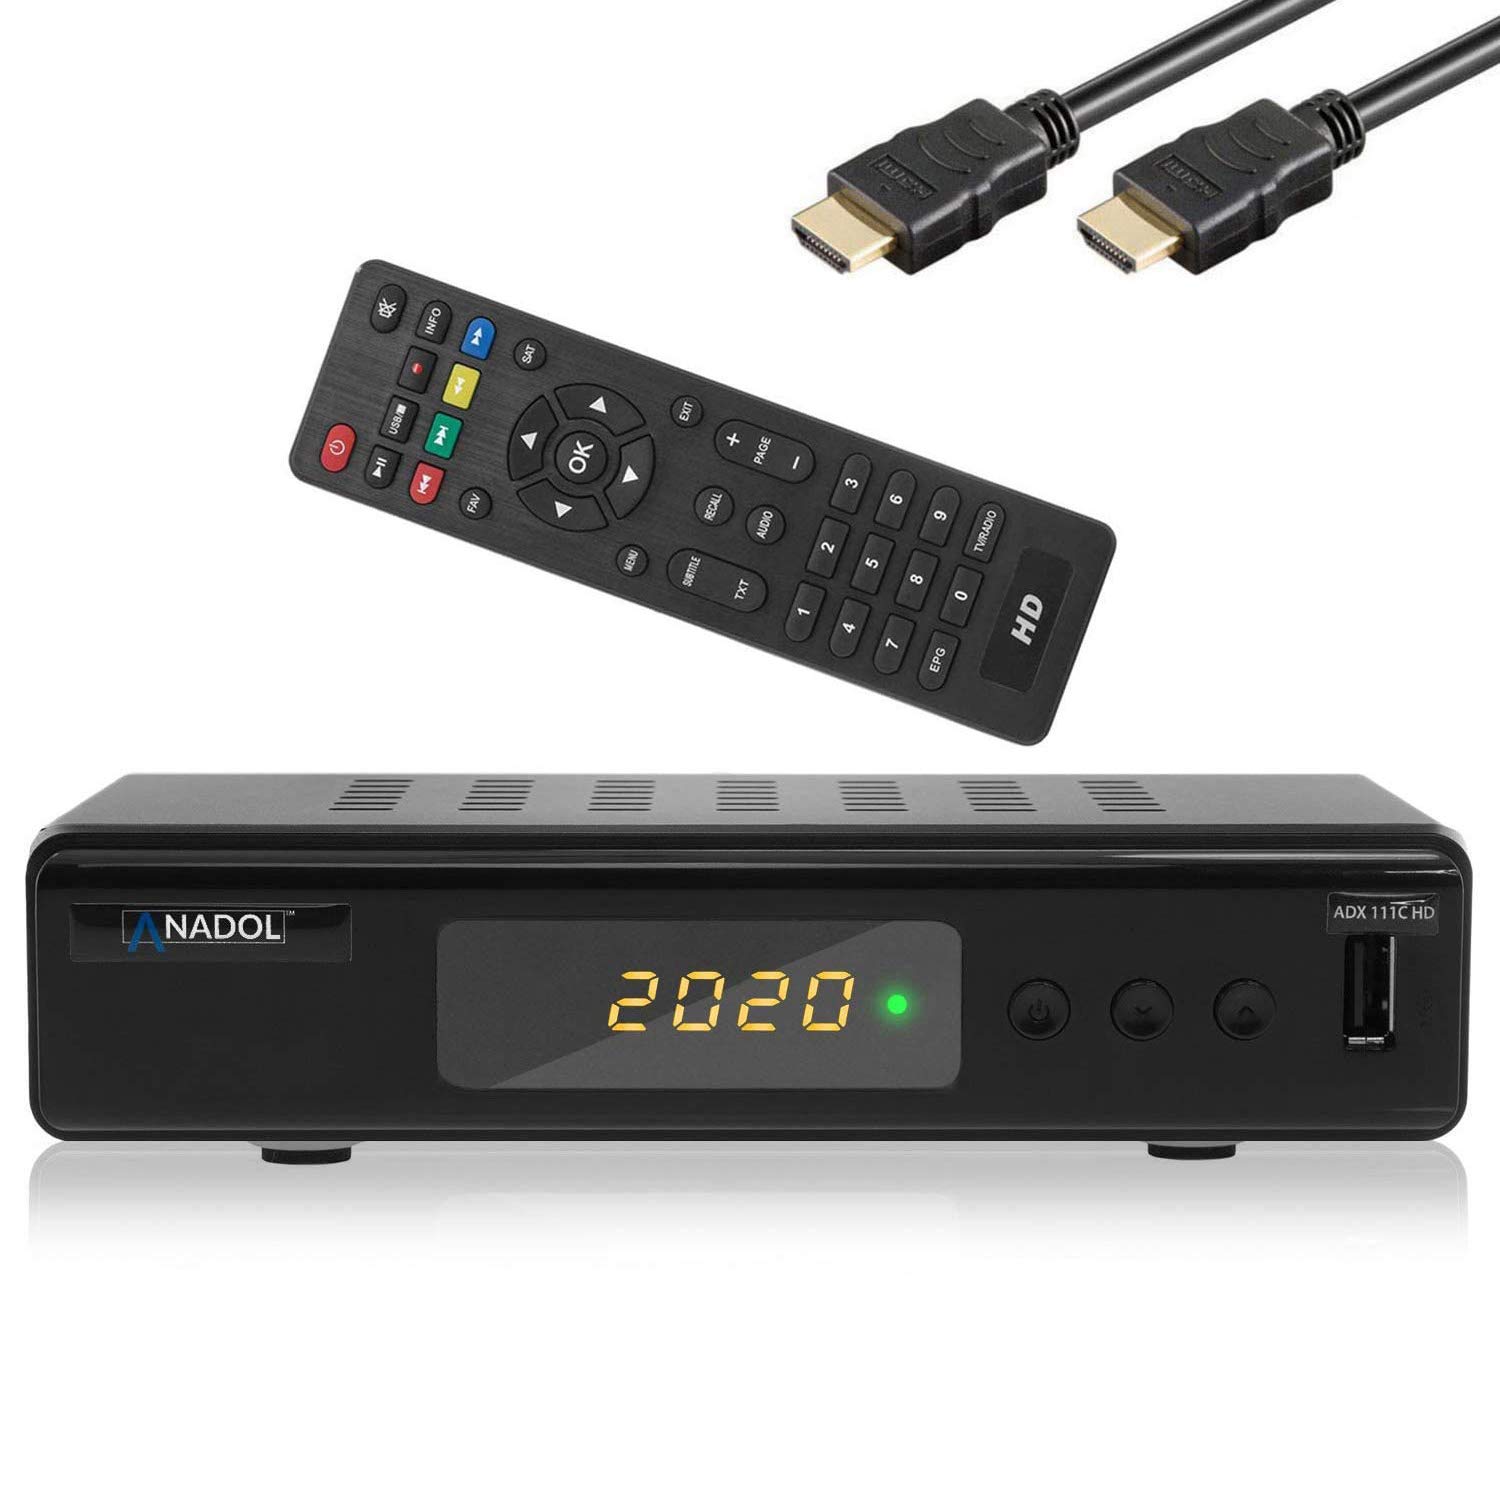 XAiOX [Test GUT * Anadol 111c digitaler Full HD Kabel Receiver - USB Aufnahme Funktion, [Umstieg Analog auf Digital] HDMI Kabel (HDTV, DVB-C / C2, HDMI, Mediaplayer) [automatische Installation]